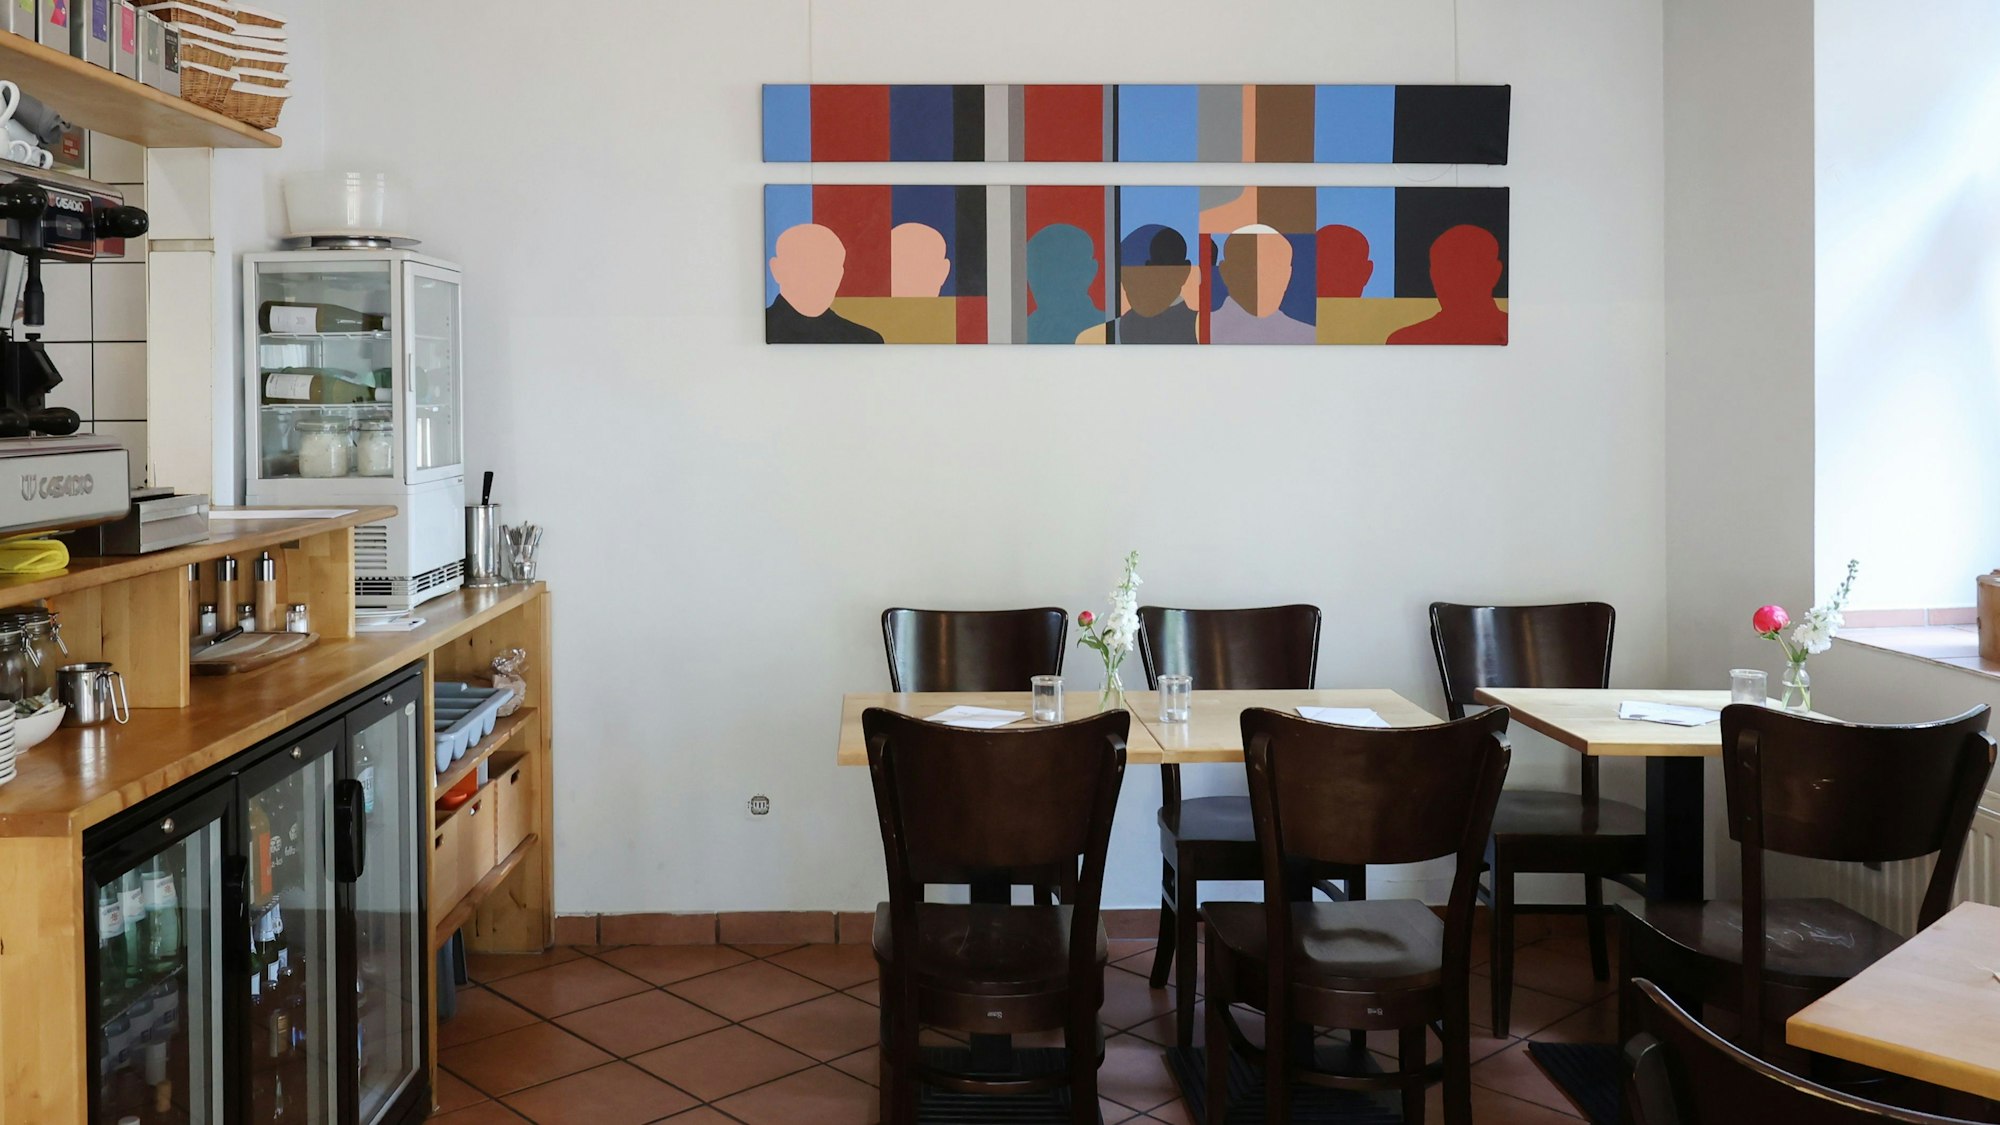 Tische und Stühle in einem Restaurant, bunte Bilder an der Wand